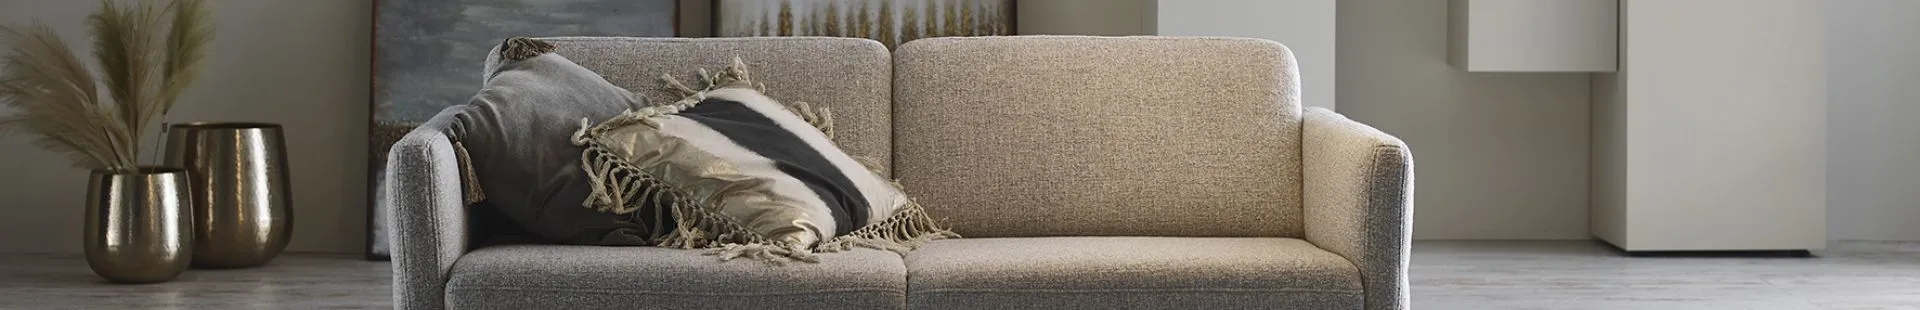 Global Comfort Sofa